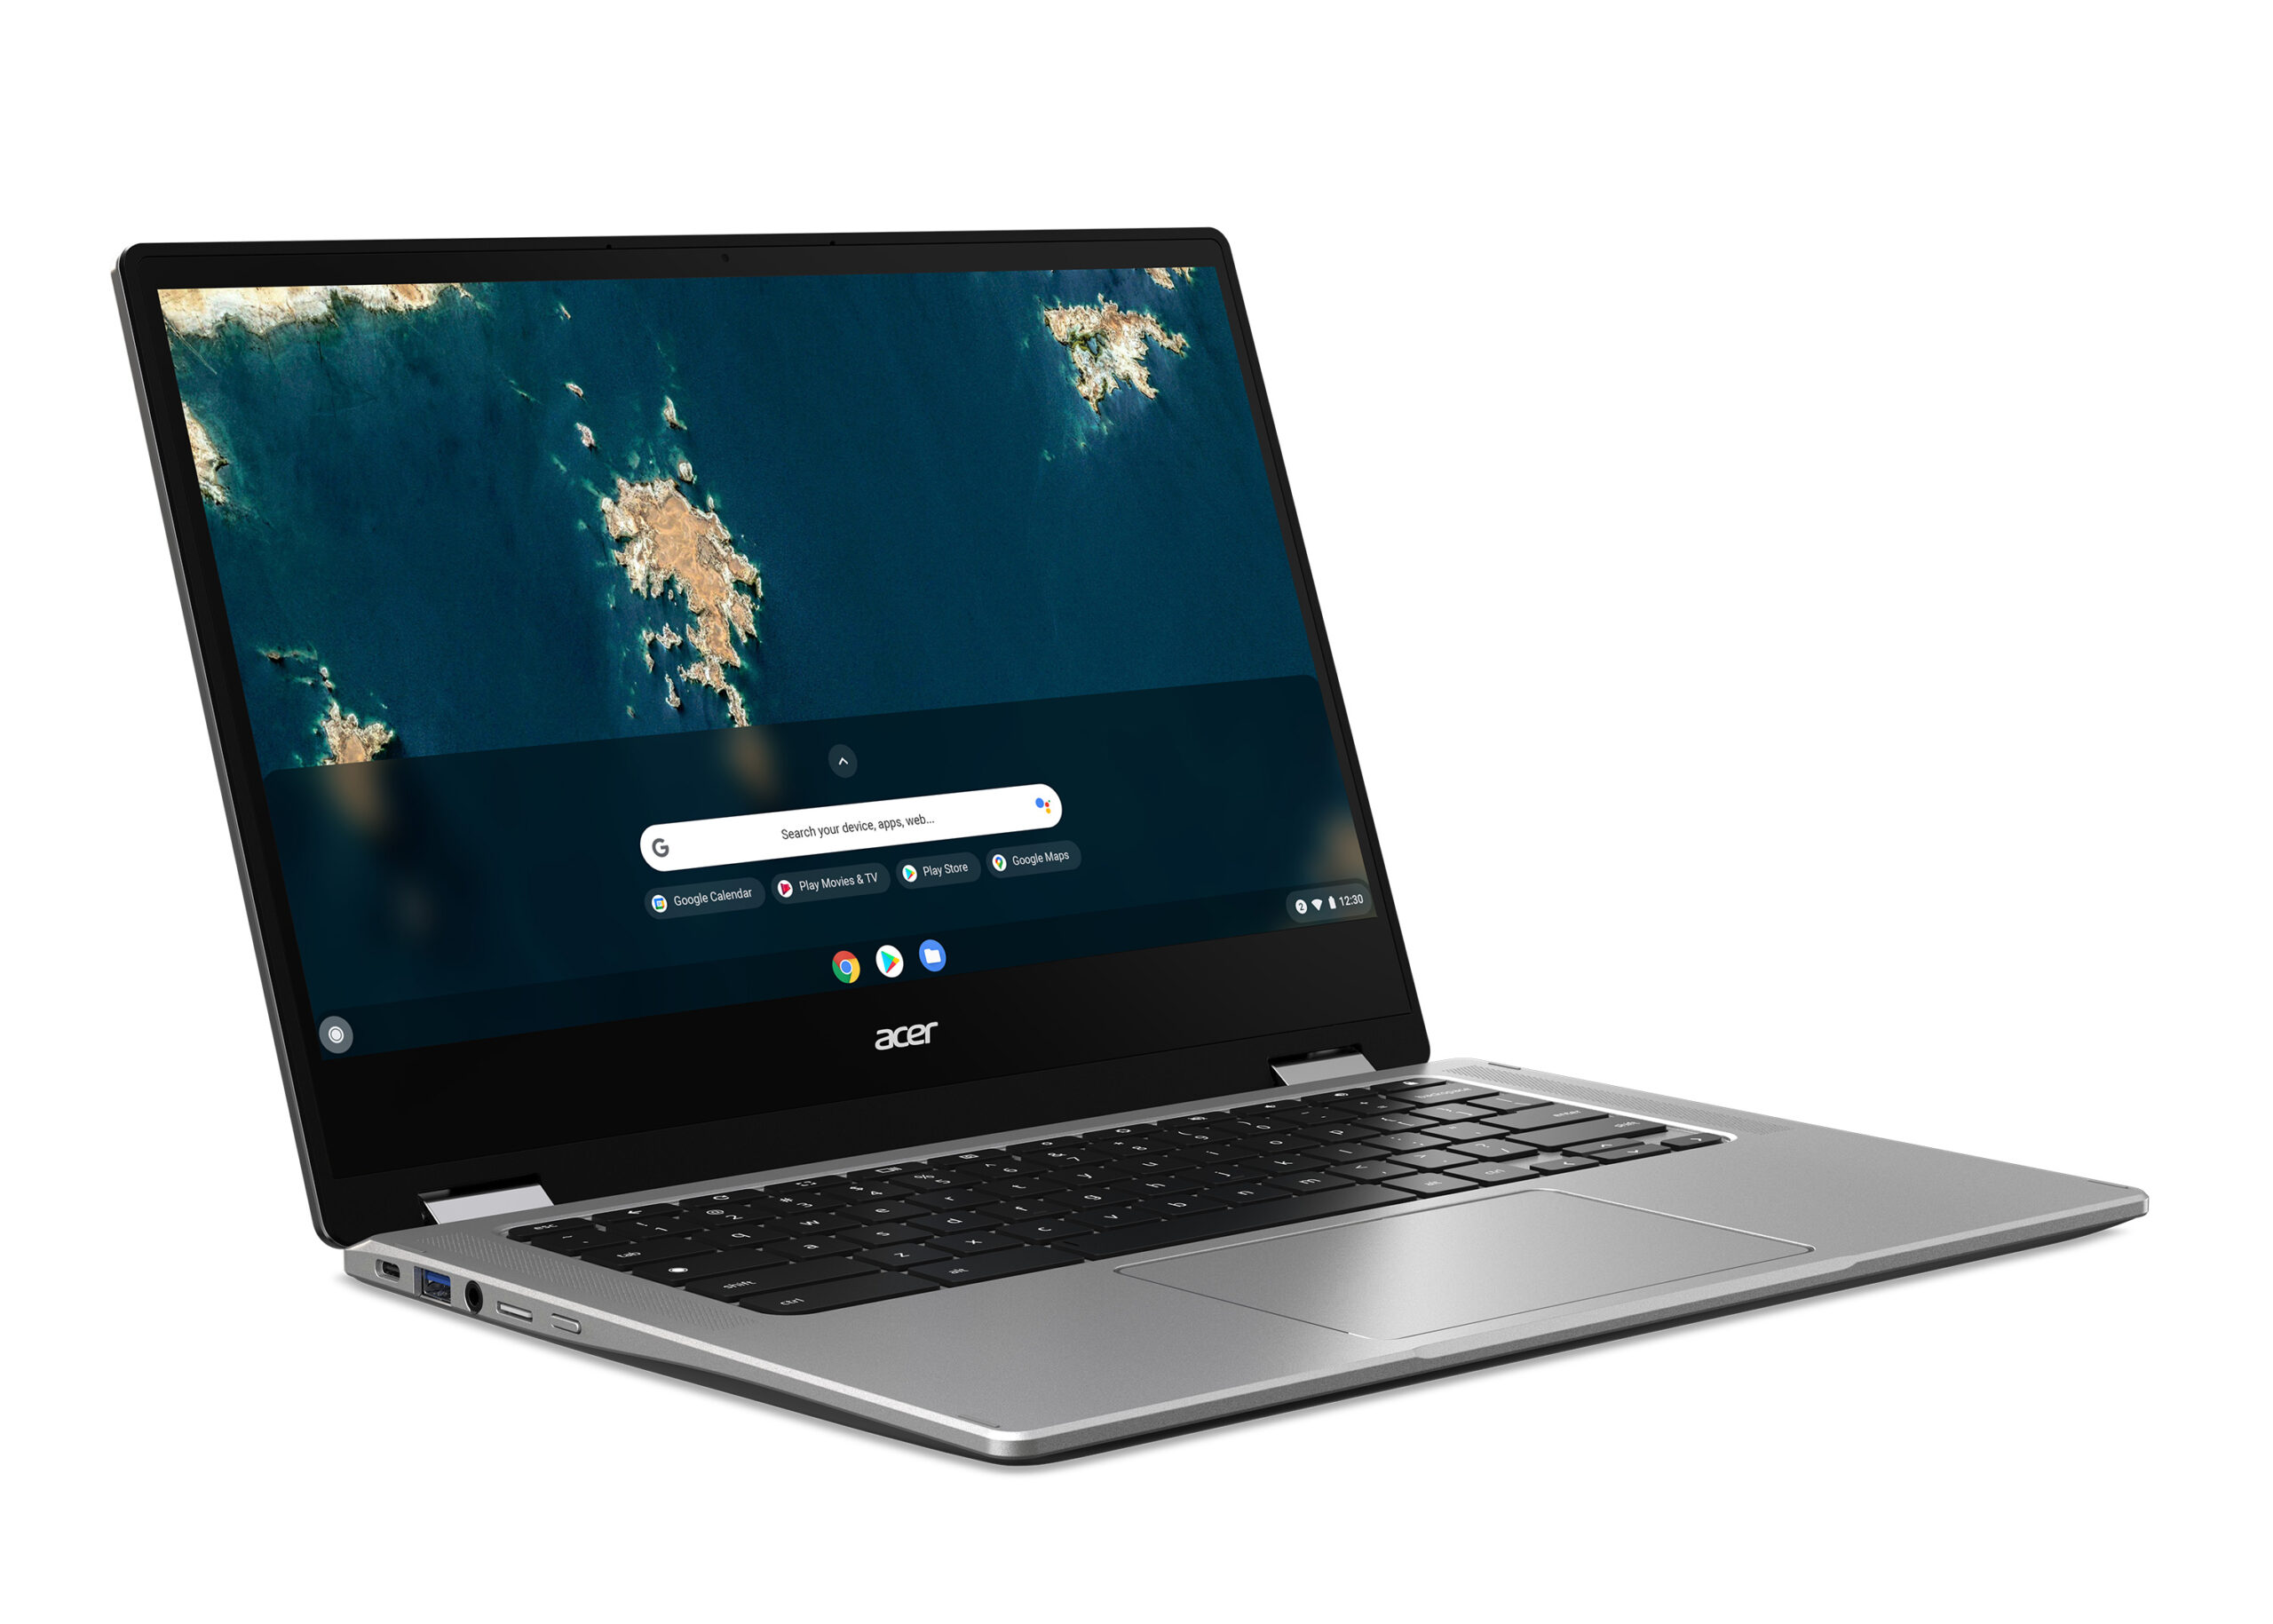 Acer presentó cuatro nuevas Chromebooks que satisfacen una variedad de necesidades de los clientes, que van desde usuarios domésticos